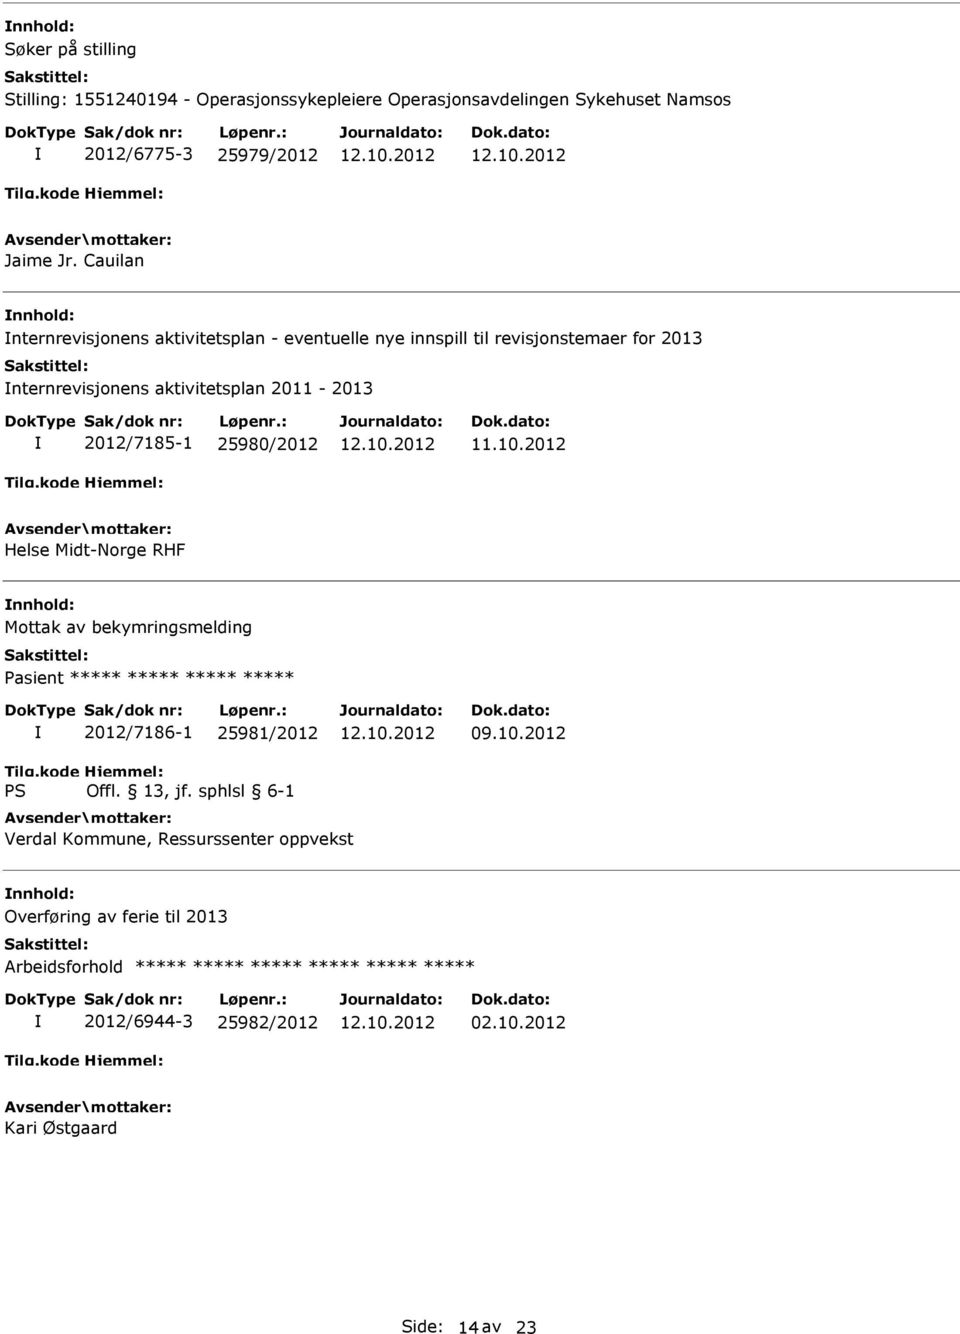 2012/7185-1 25980/2012 Helse Midt-Norge RHF Mottak av bekymringsmelding Pasient ***** ***** ***** ***** 2012/7186-1 25981/2012 09.10.